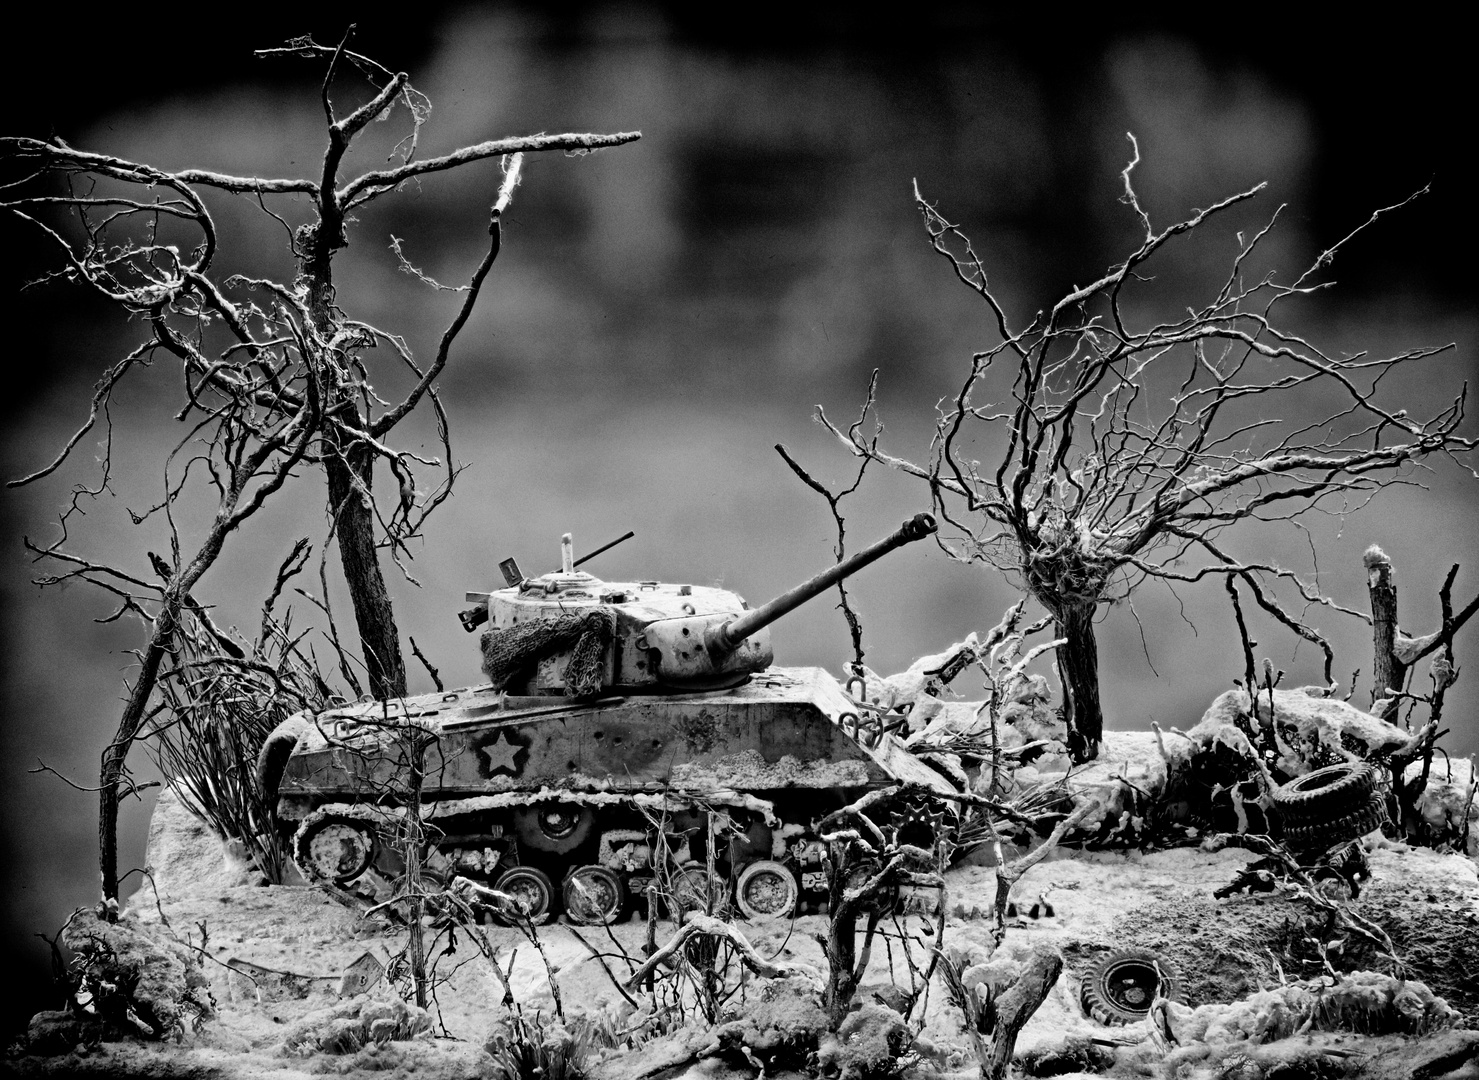 Panzer-Modell